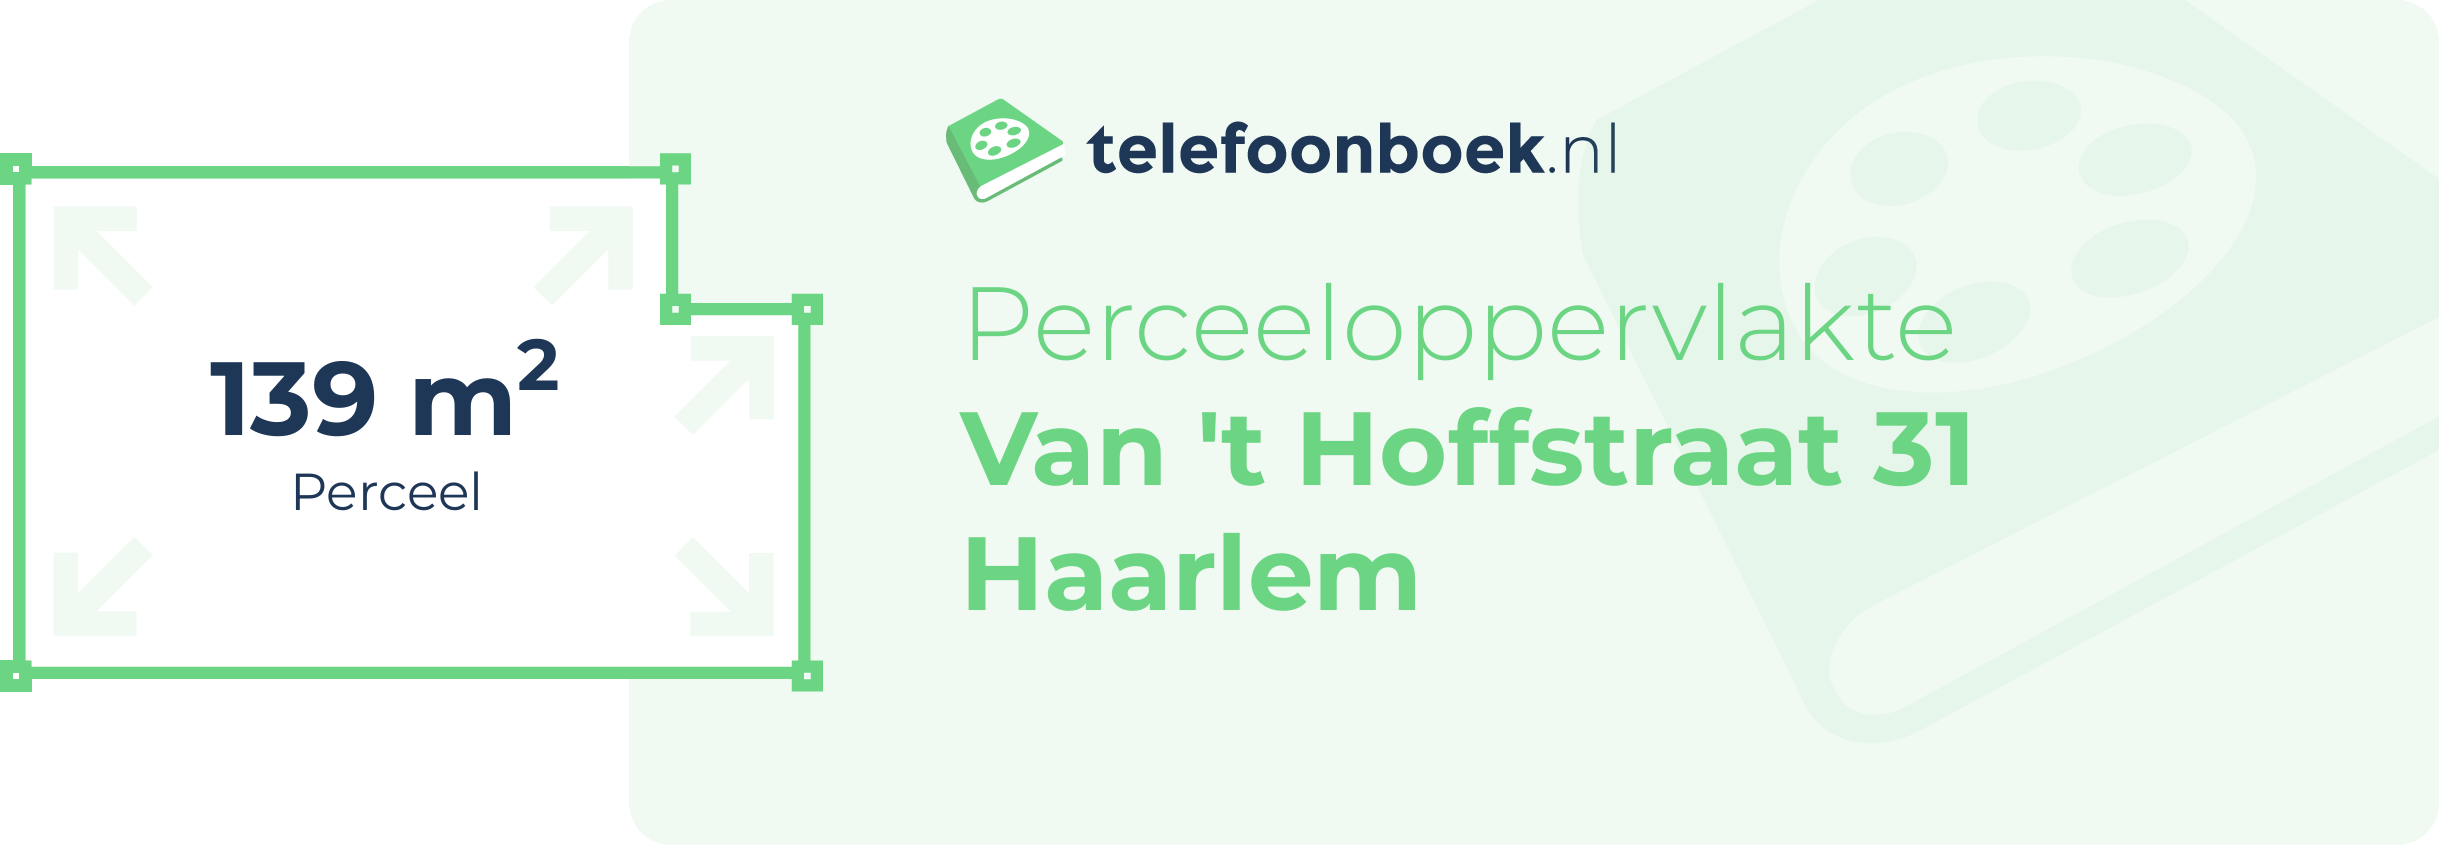 Perceeloppervlakte Van 't Hoffstraat 31 Haarlem